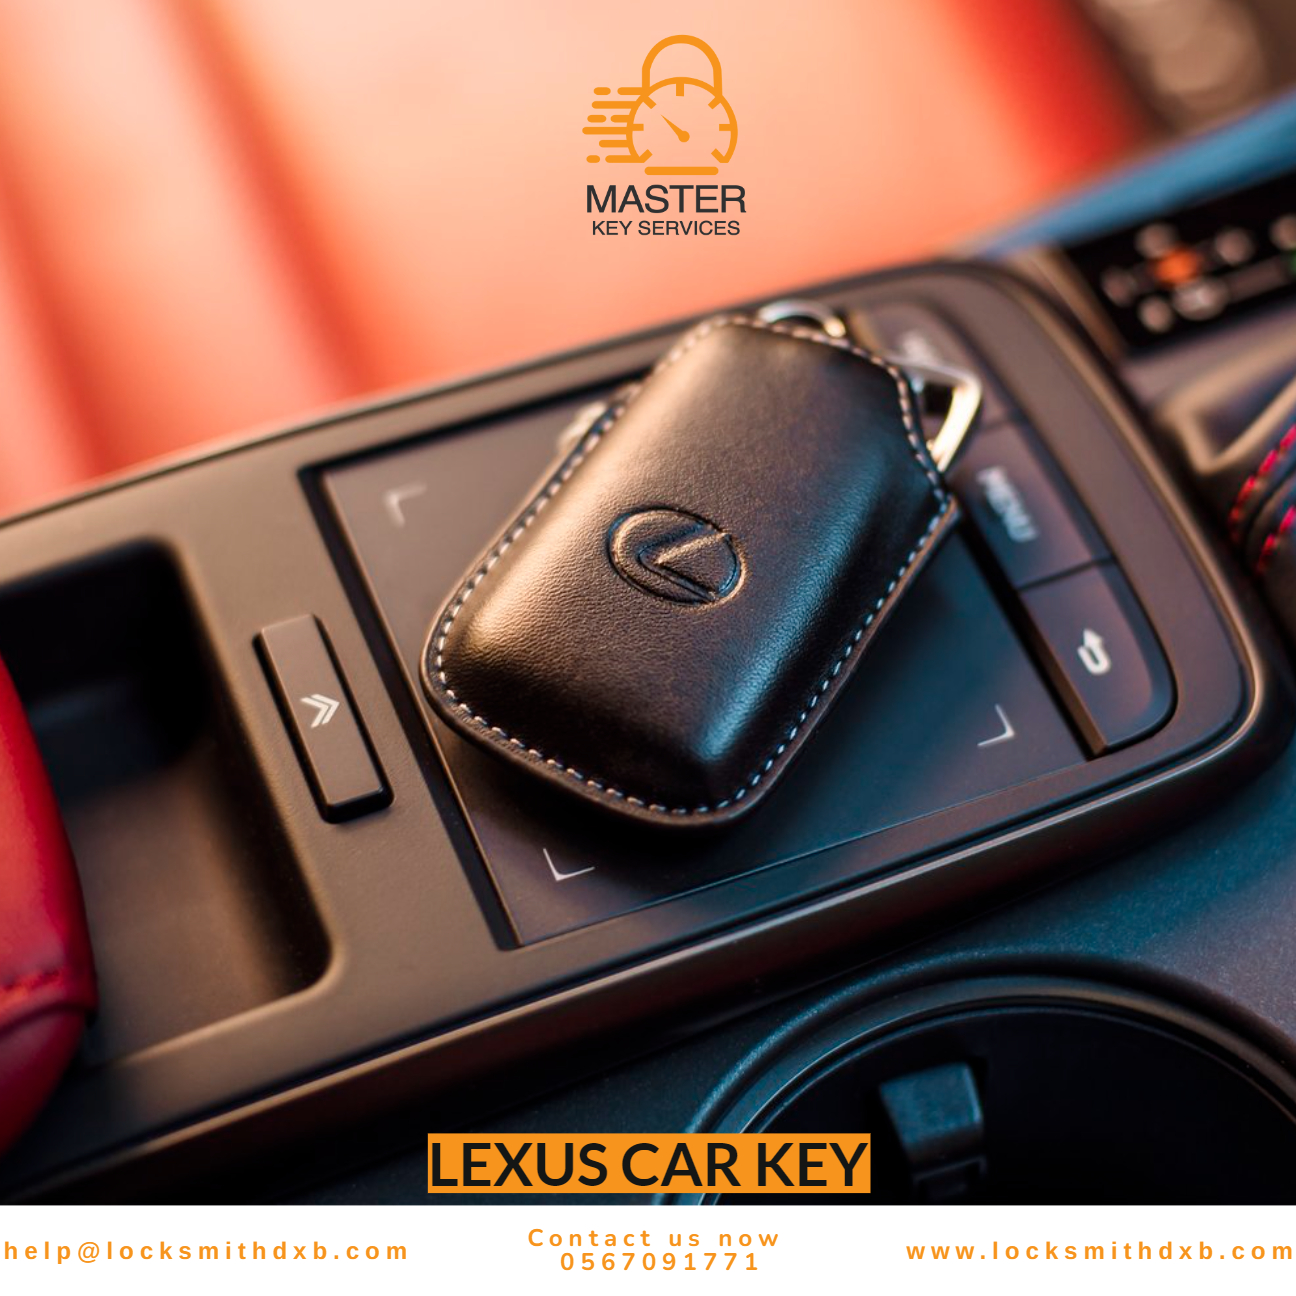 Lexus car key